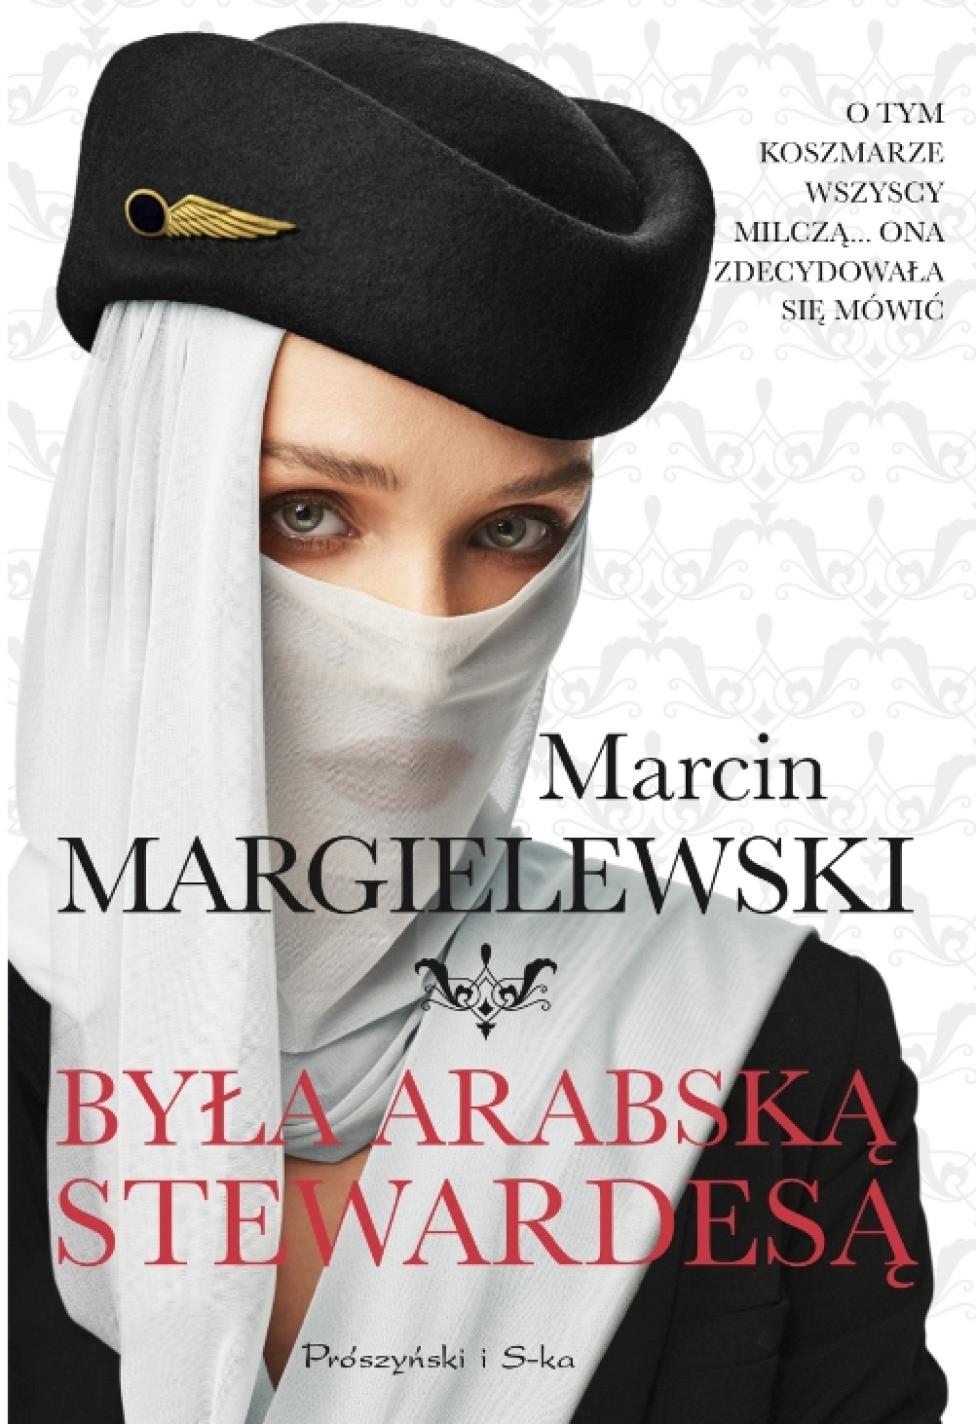 Książka: "Była arabską stewardesą" (fot. Prószyński i S-ka)